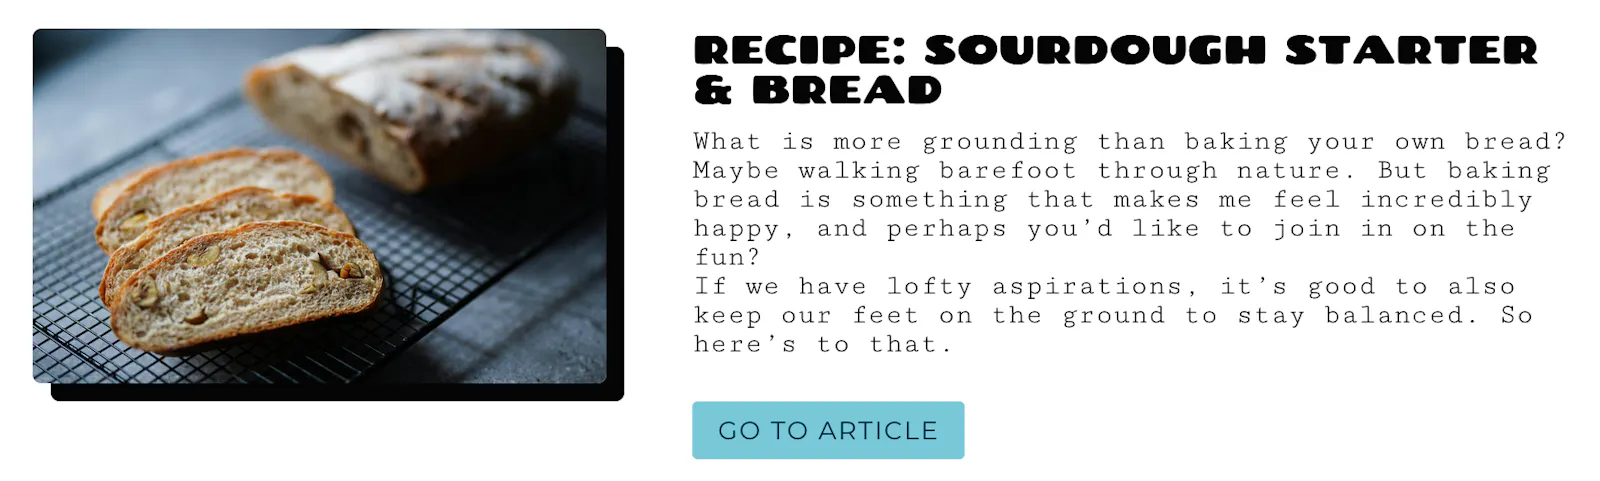 Recipe: Sourdough Starter & Bread